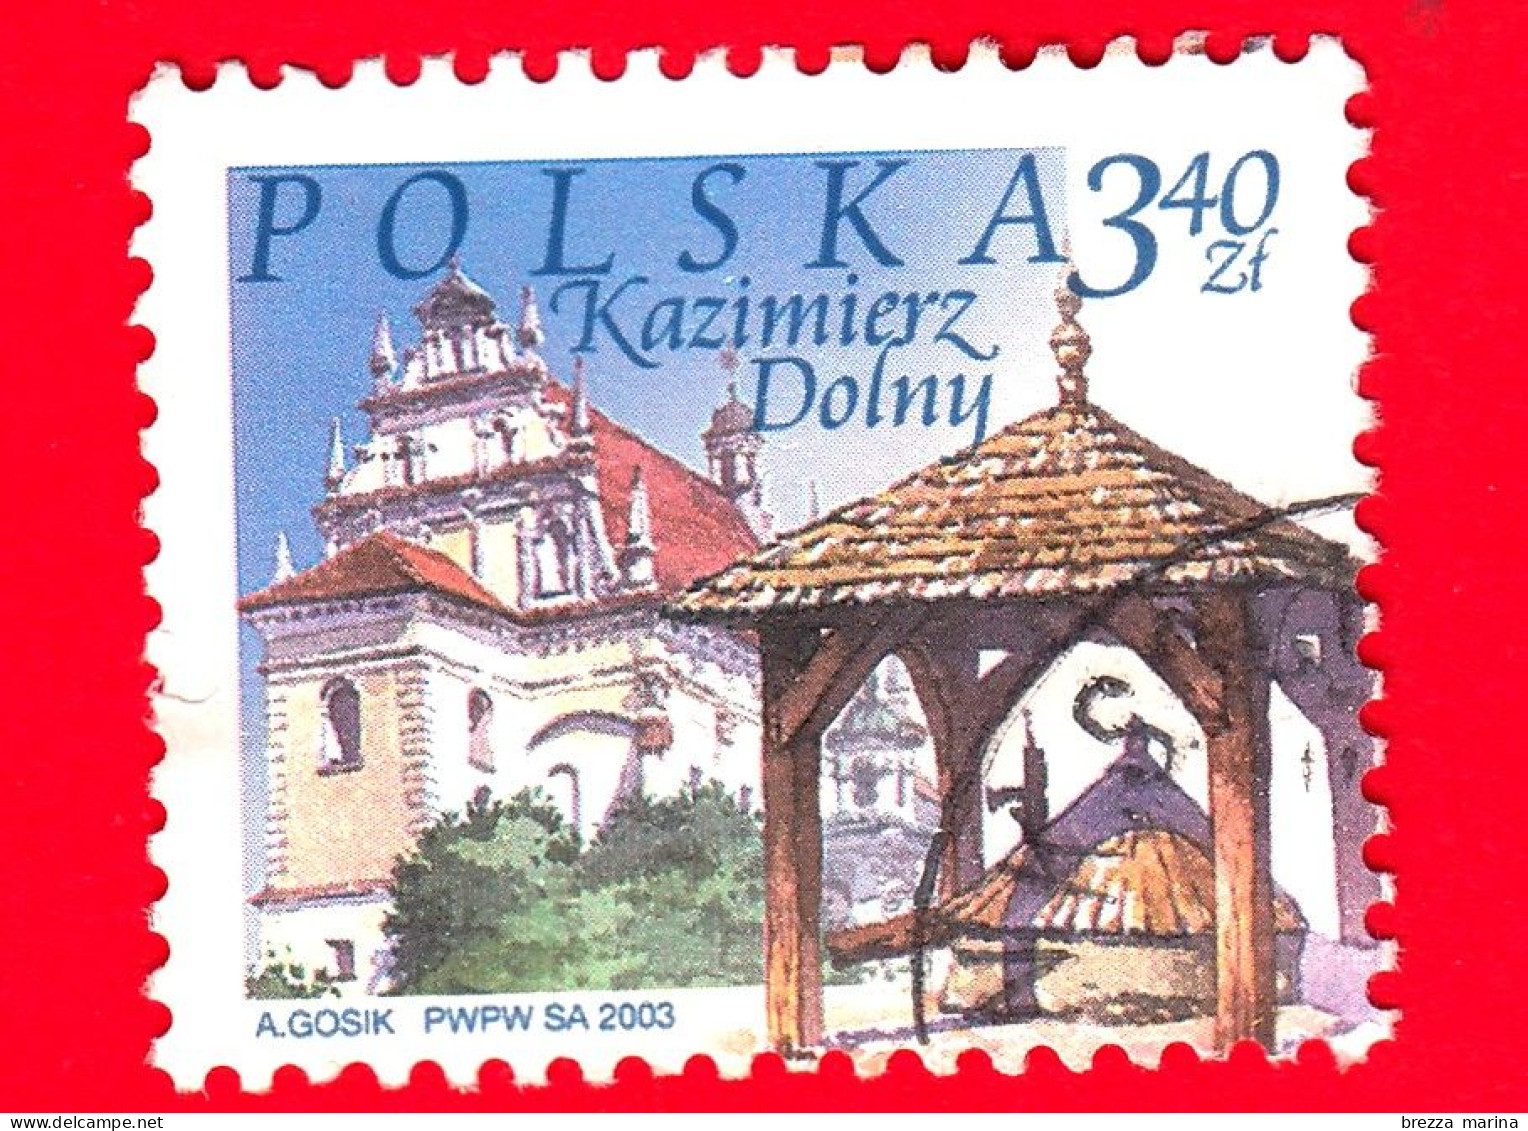 POLONIA - Usato - 2003 - Luoghi D'interesse Di Città Polacche - Chiesa E Pozzo, Kazimierz Dolny - 3.40 - Usati